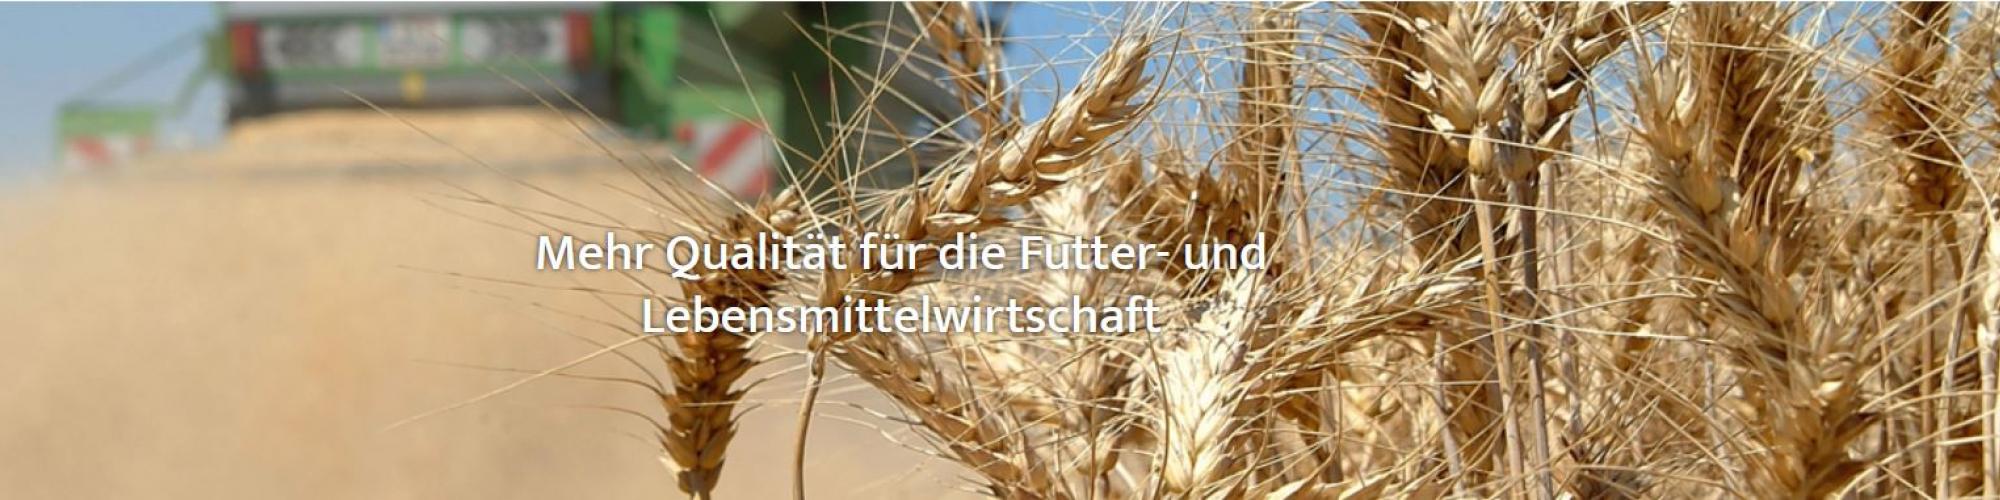 AGRIZERT Zertifizierungs GmbH